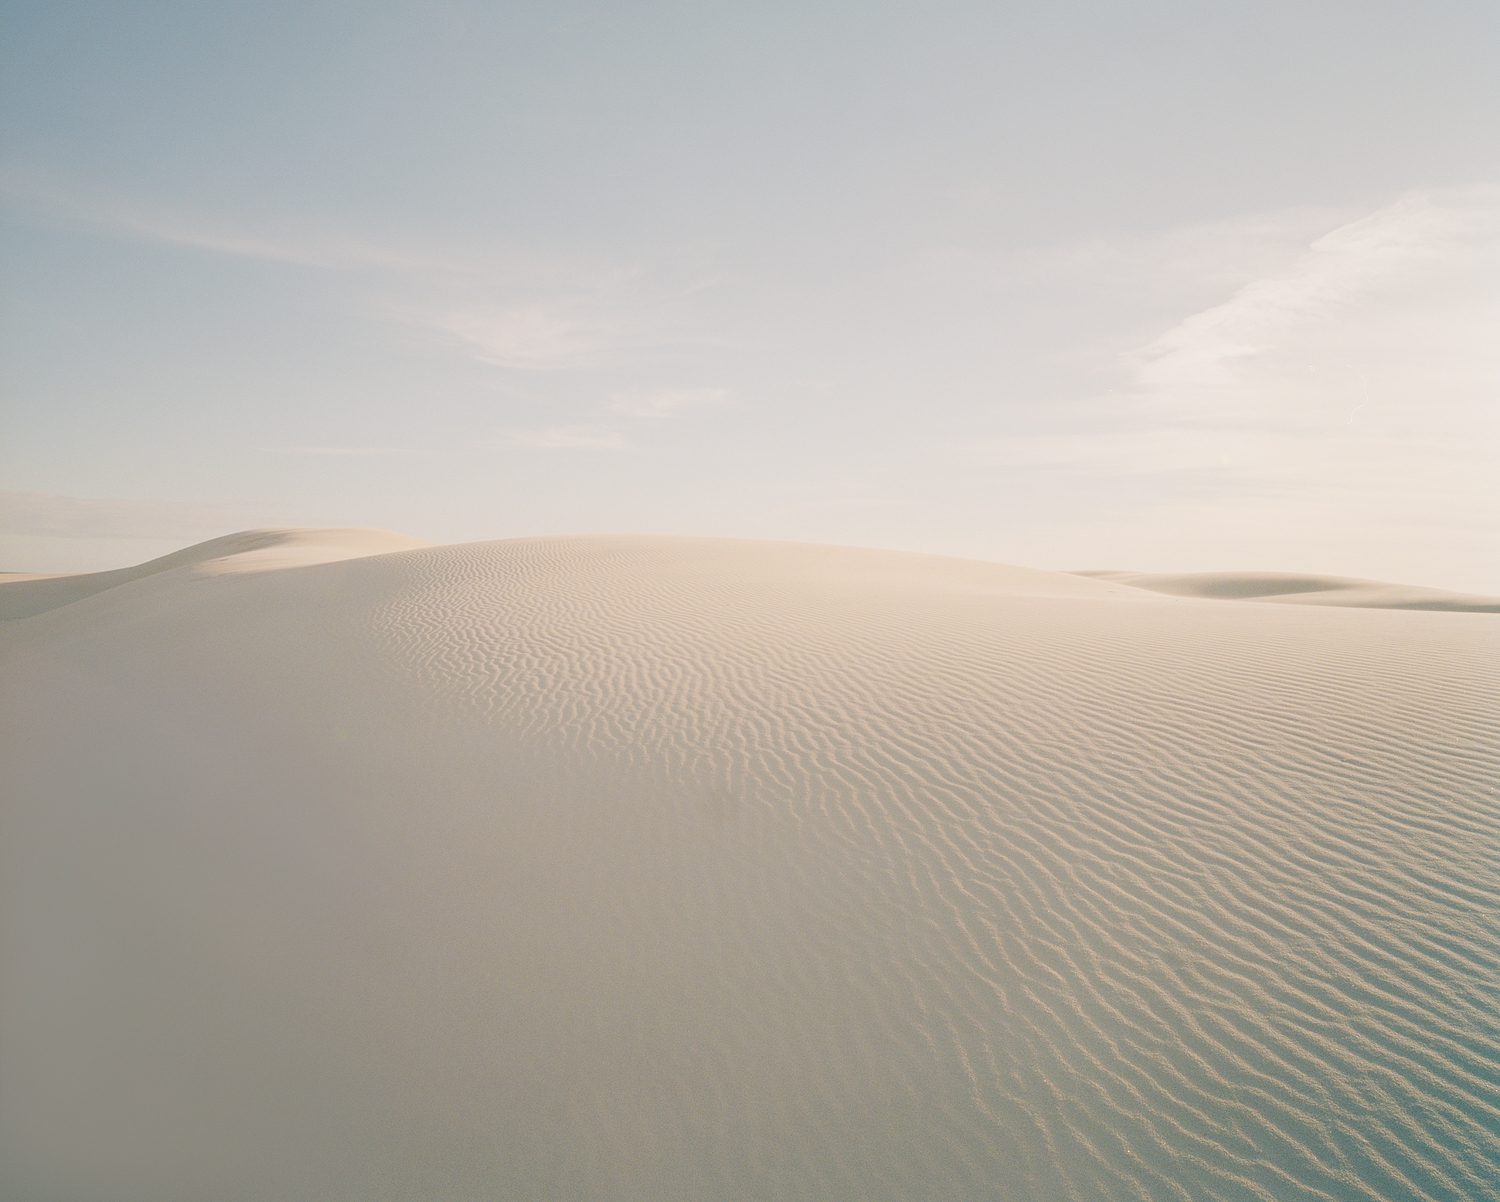  Dune #16, 2012 